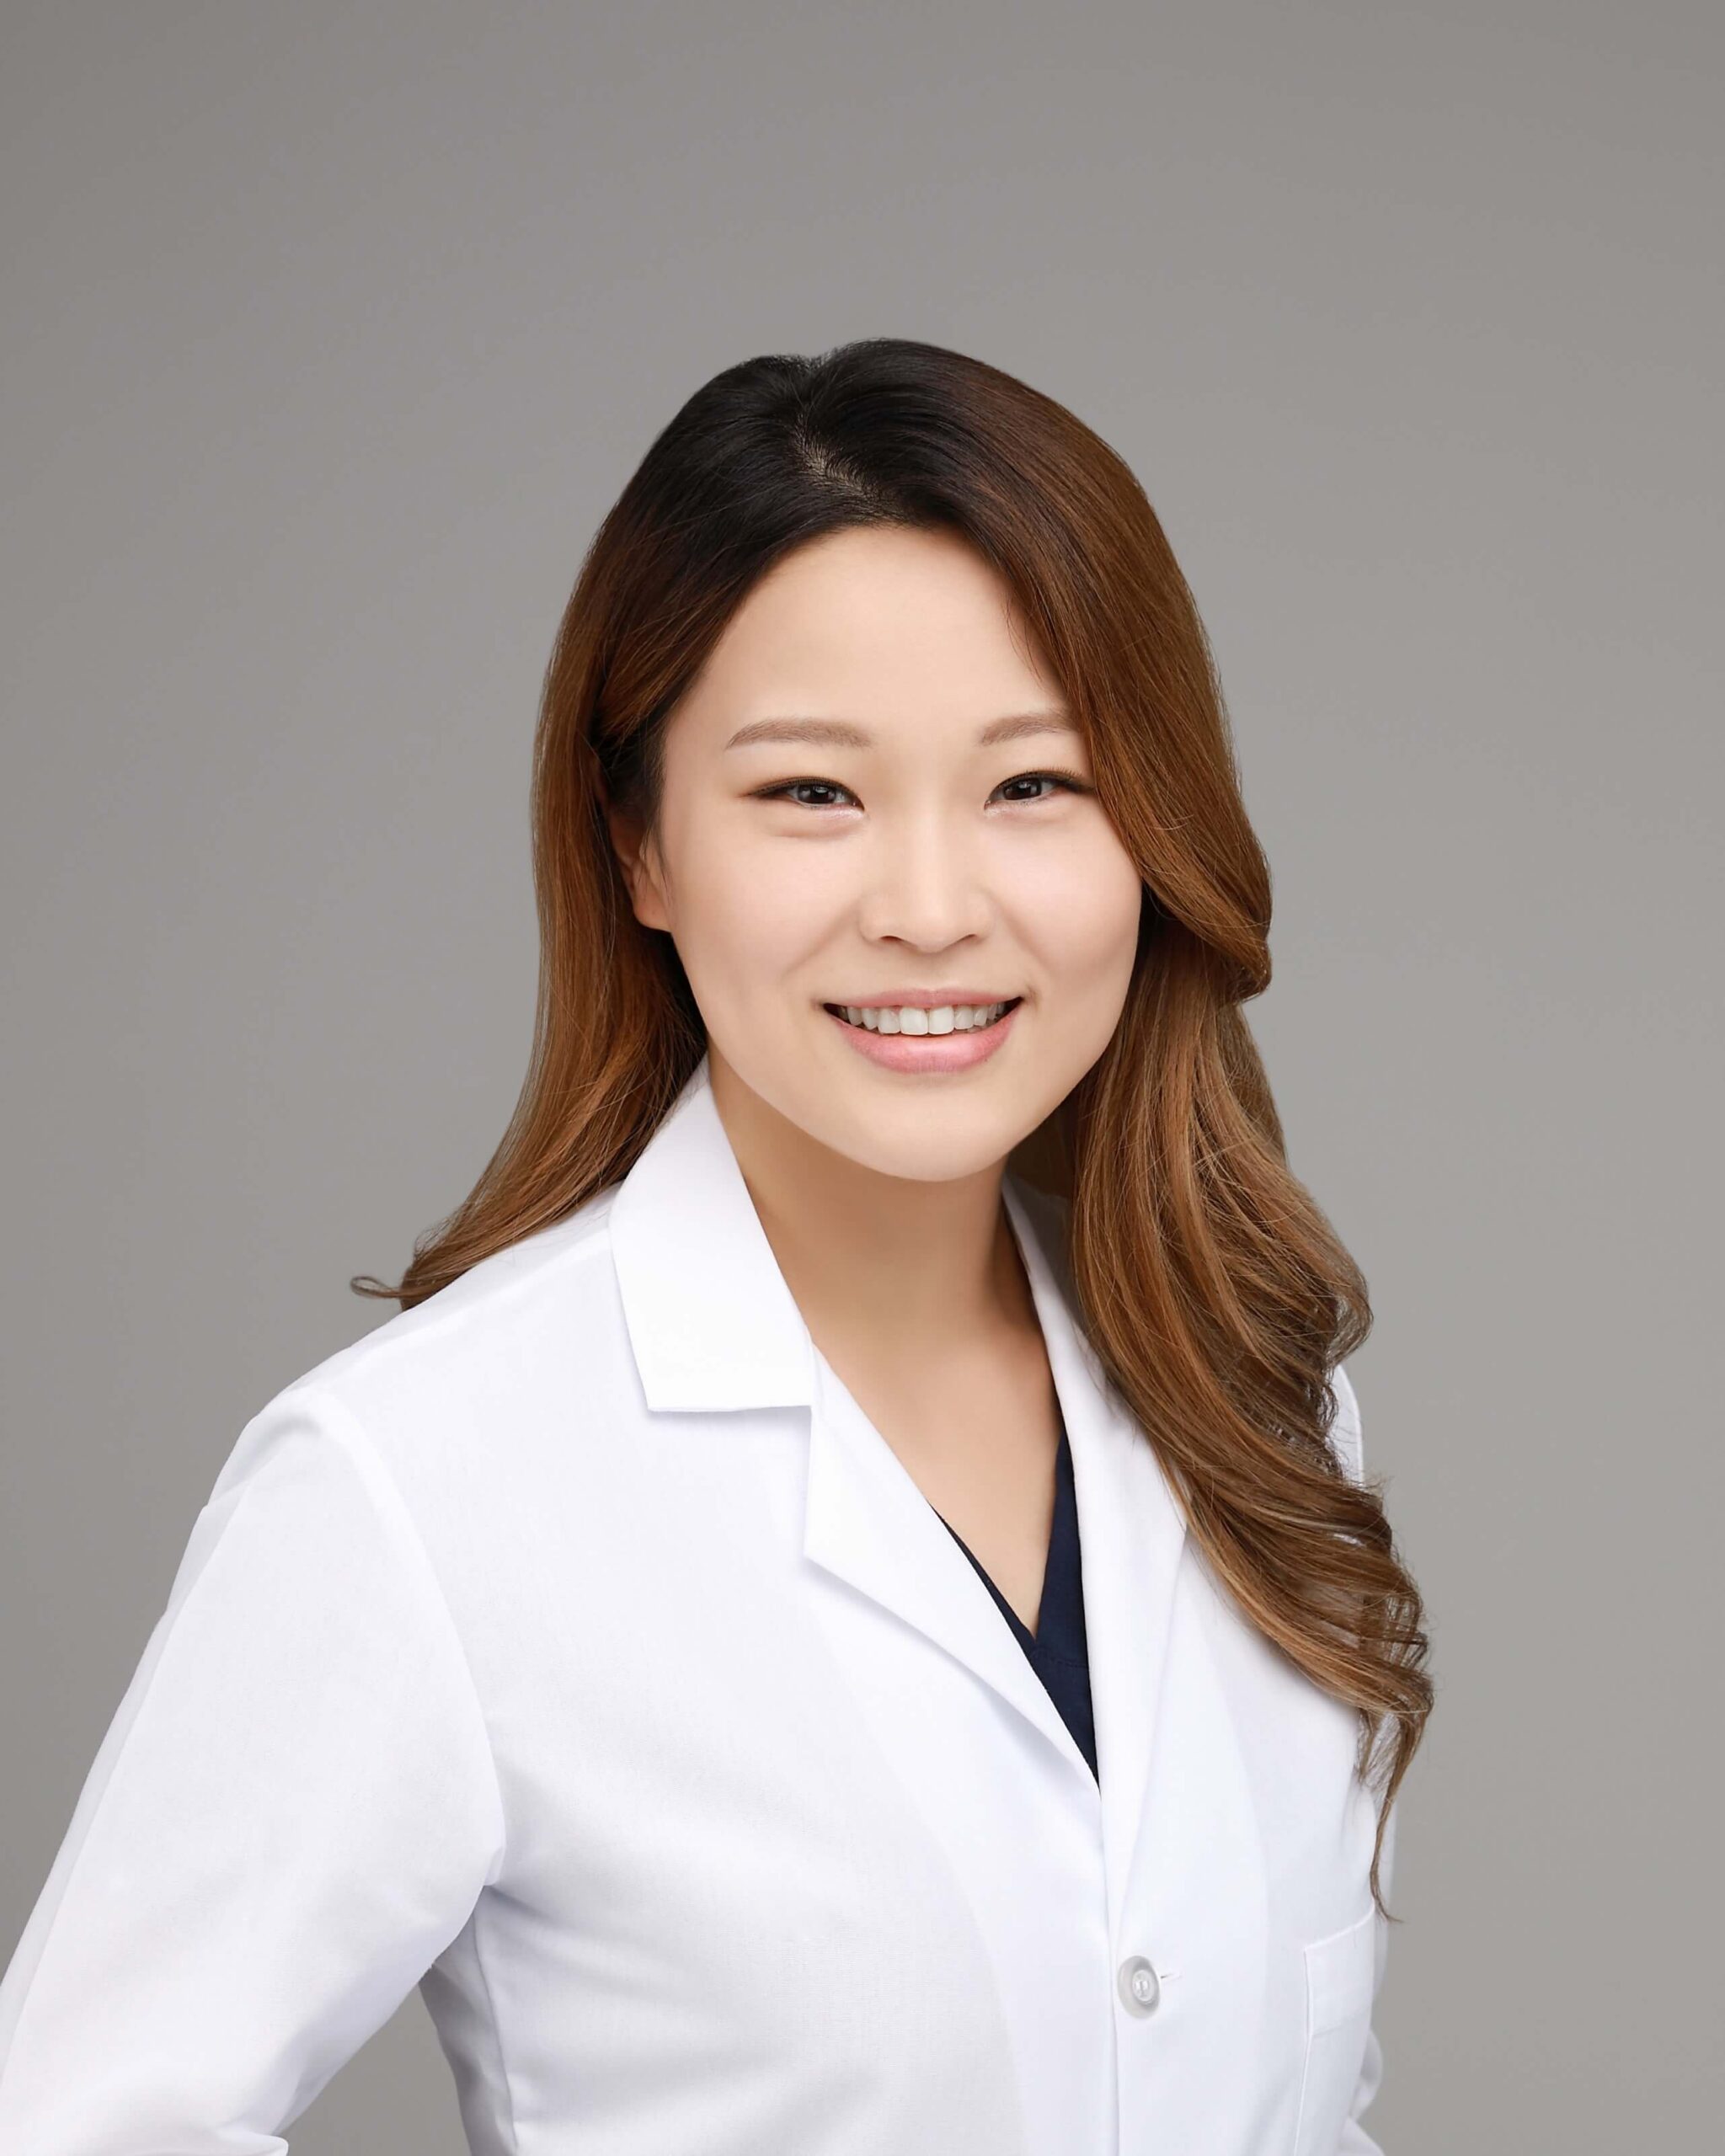 Dr. Jae Choi